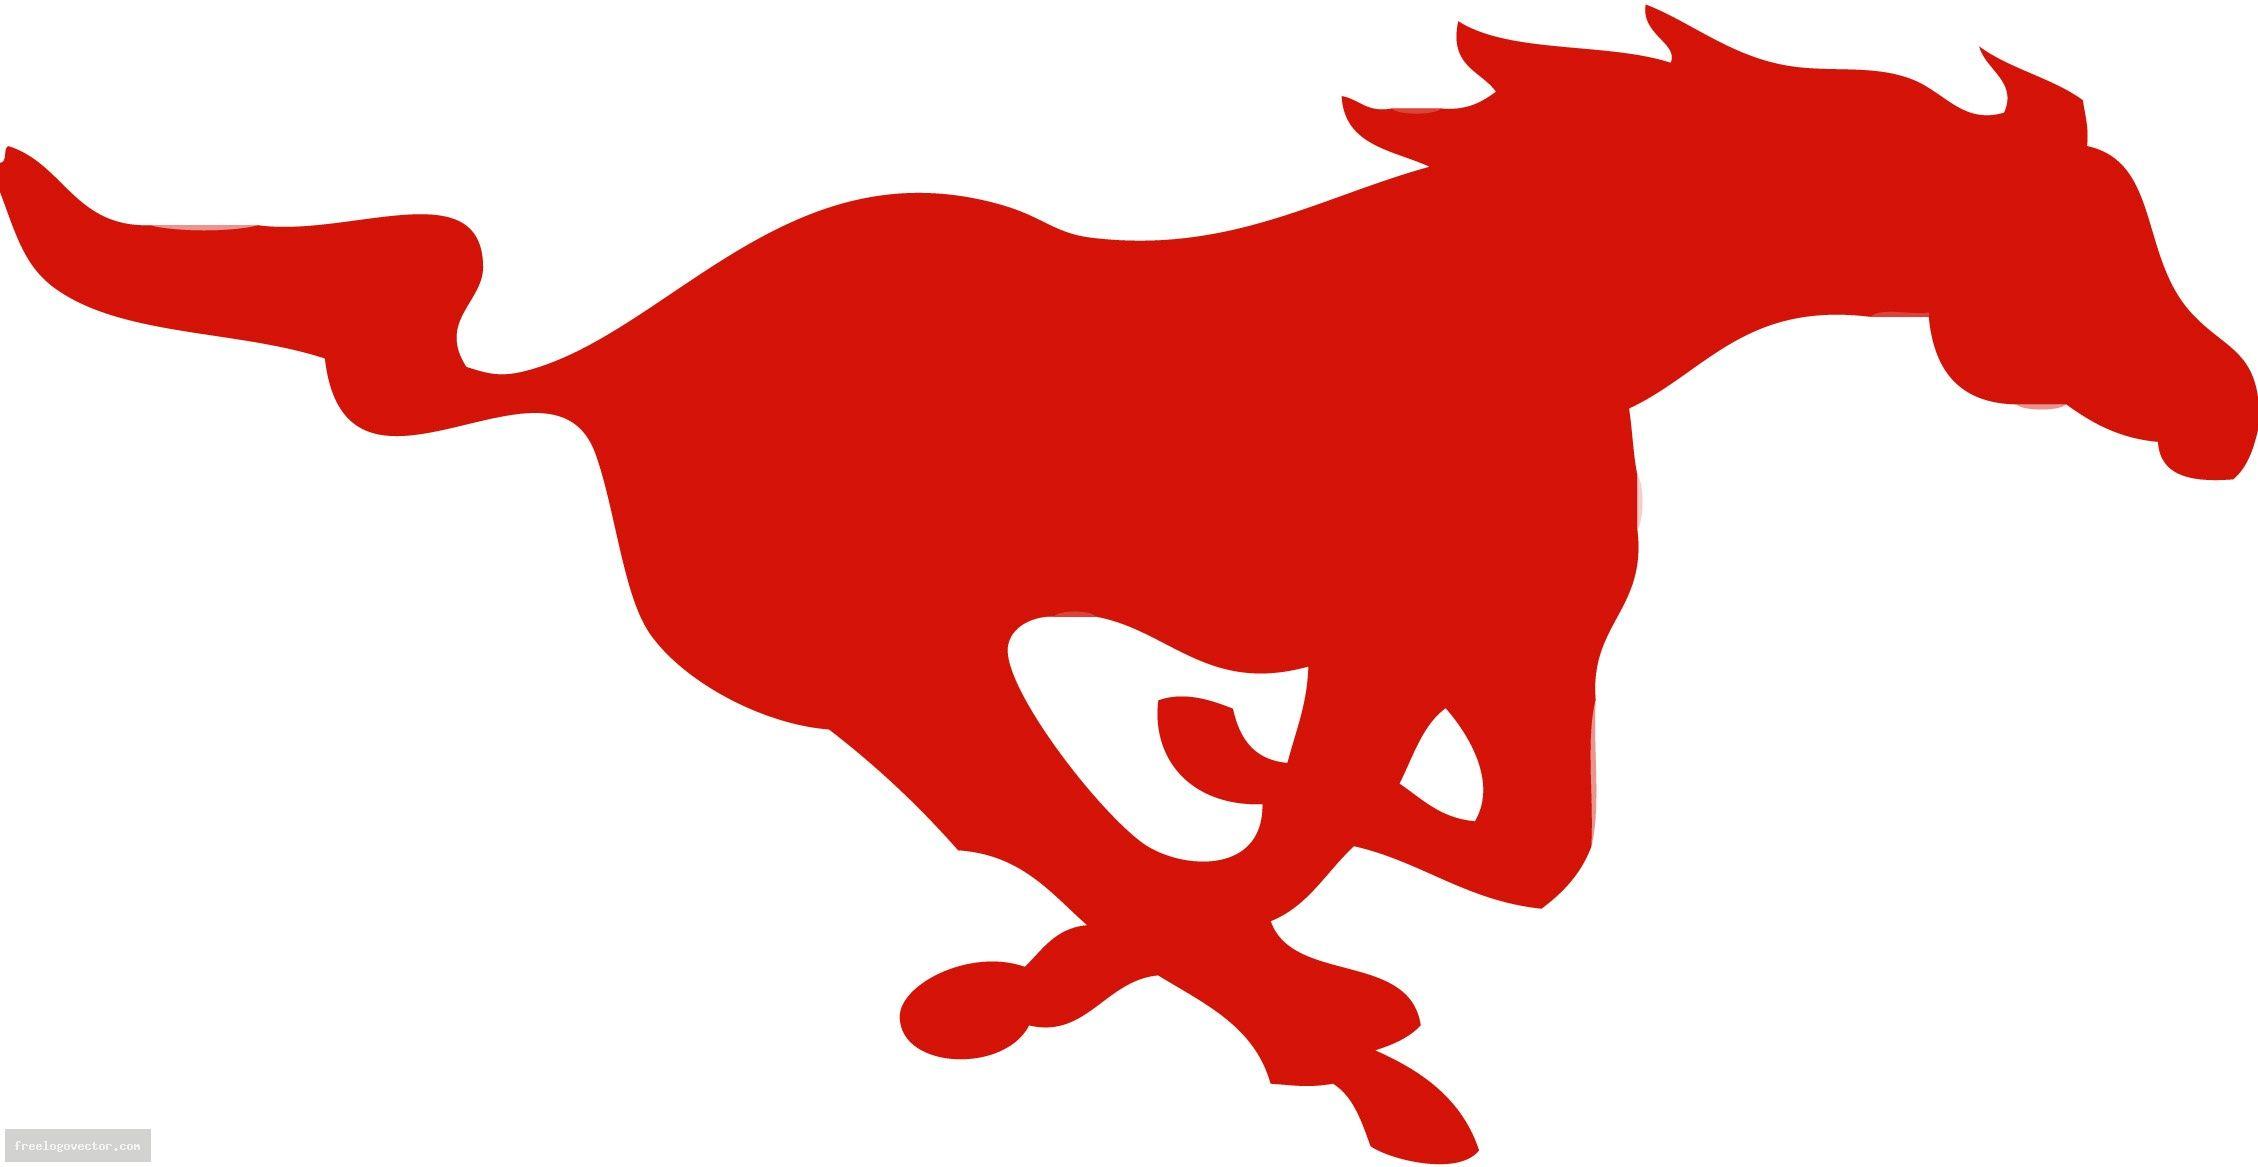 Running Mustang Logo - Free Mustang Logo Cliparts, Download Free Clip Art, Free Clip Art on ...